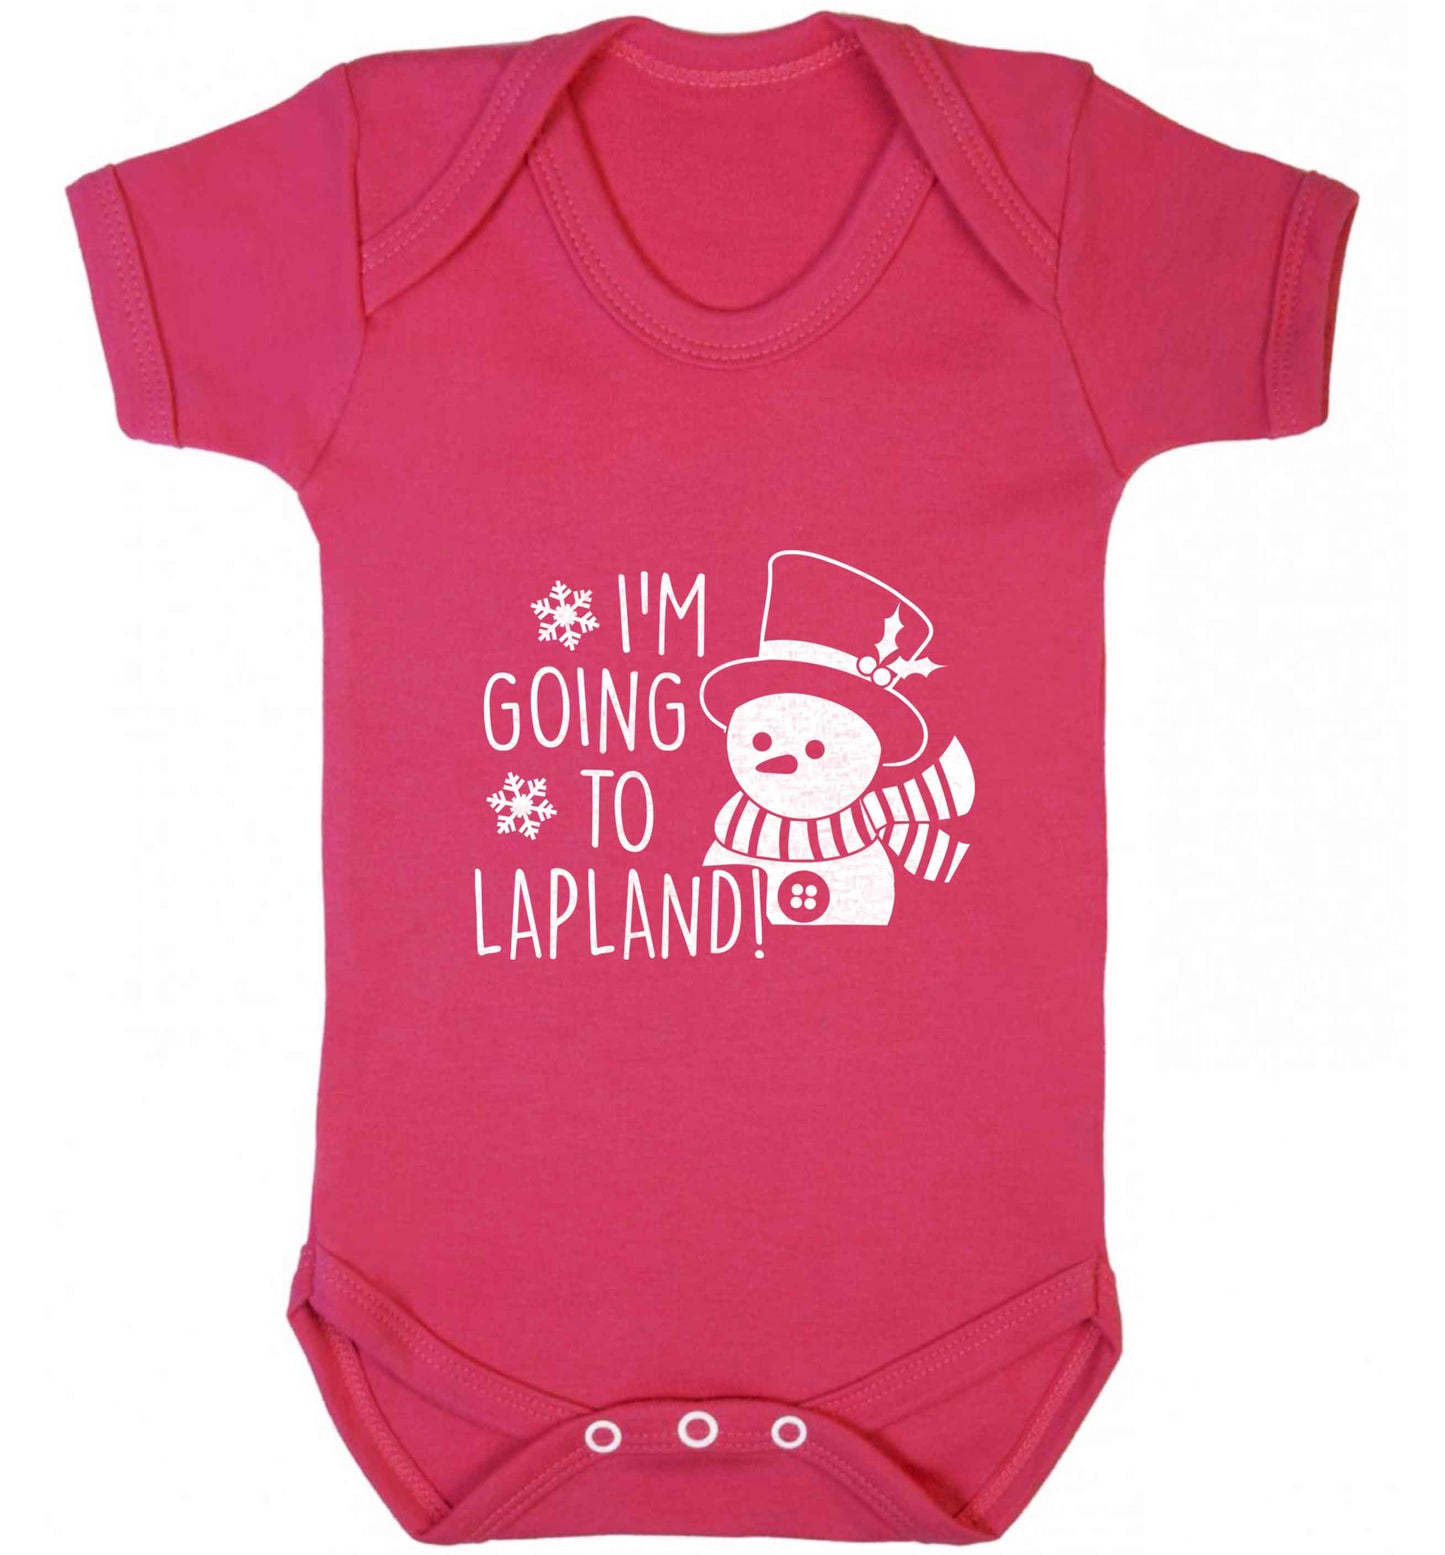 I'm going to Lapland baby vest dark pink 18-24 months